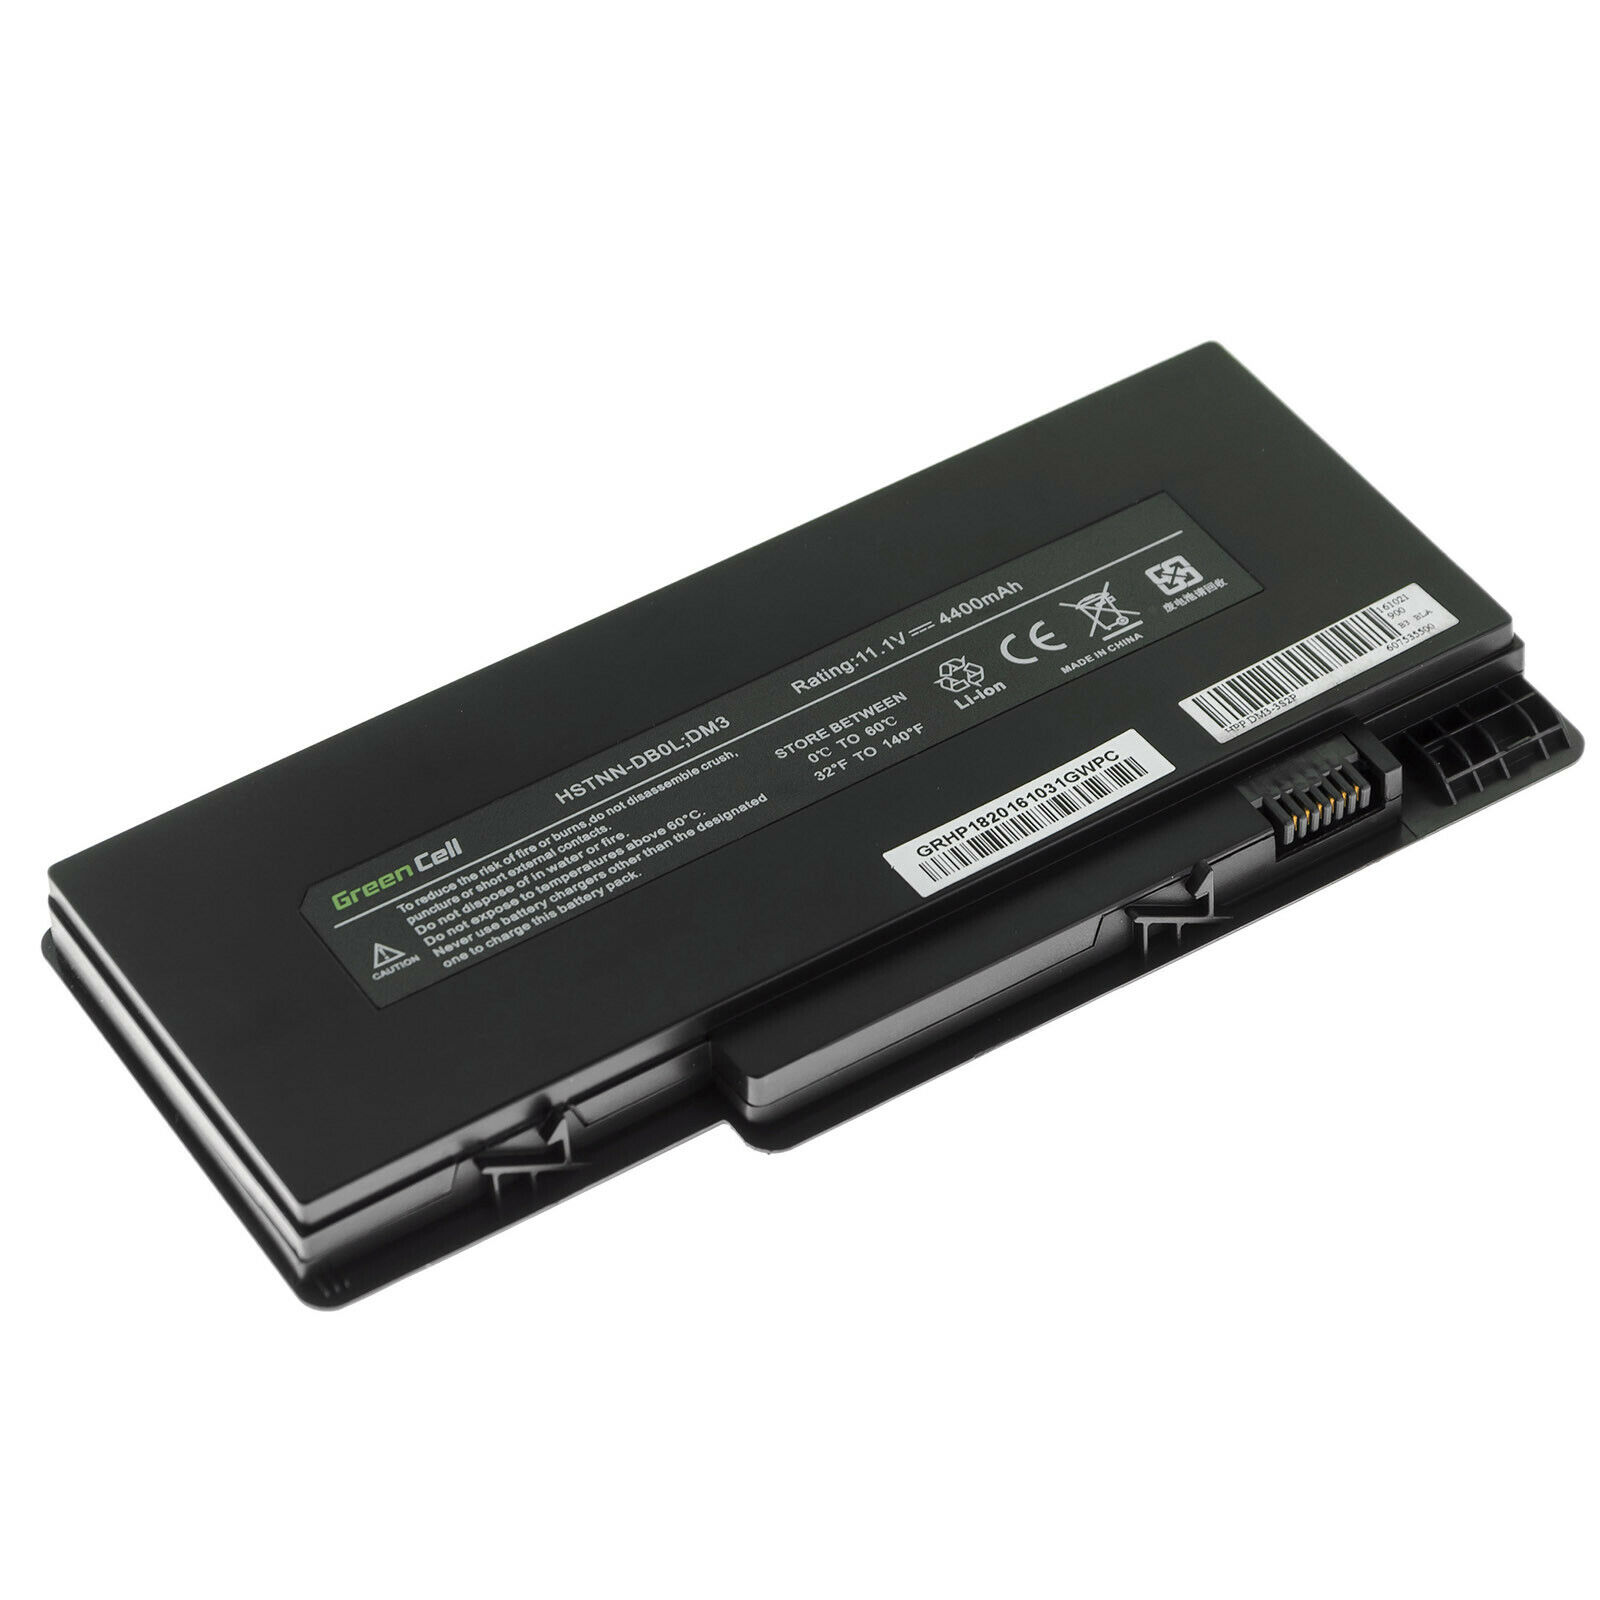 Batterie pour HP VG586AA HSTNN-OB0L HSTNN-E02C FD06 HSTNN-E03C HSTNN-DB0L(compatible)